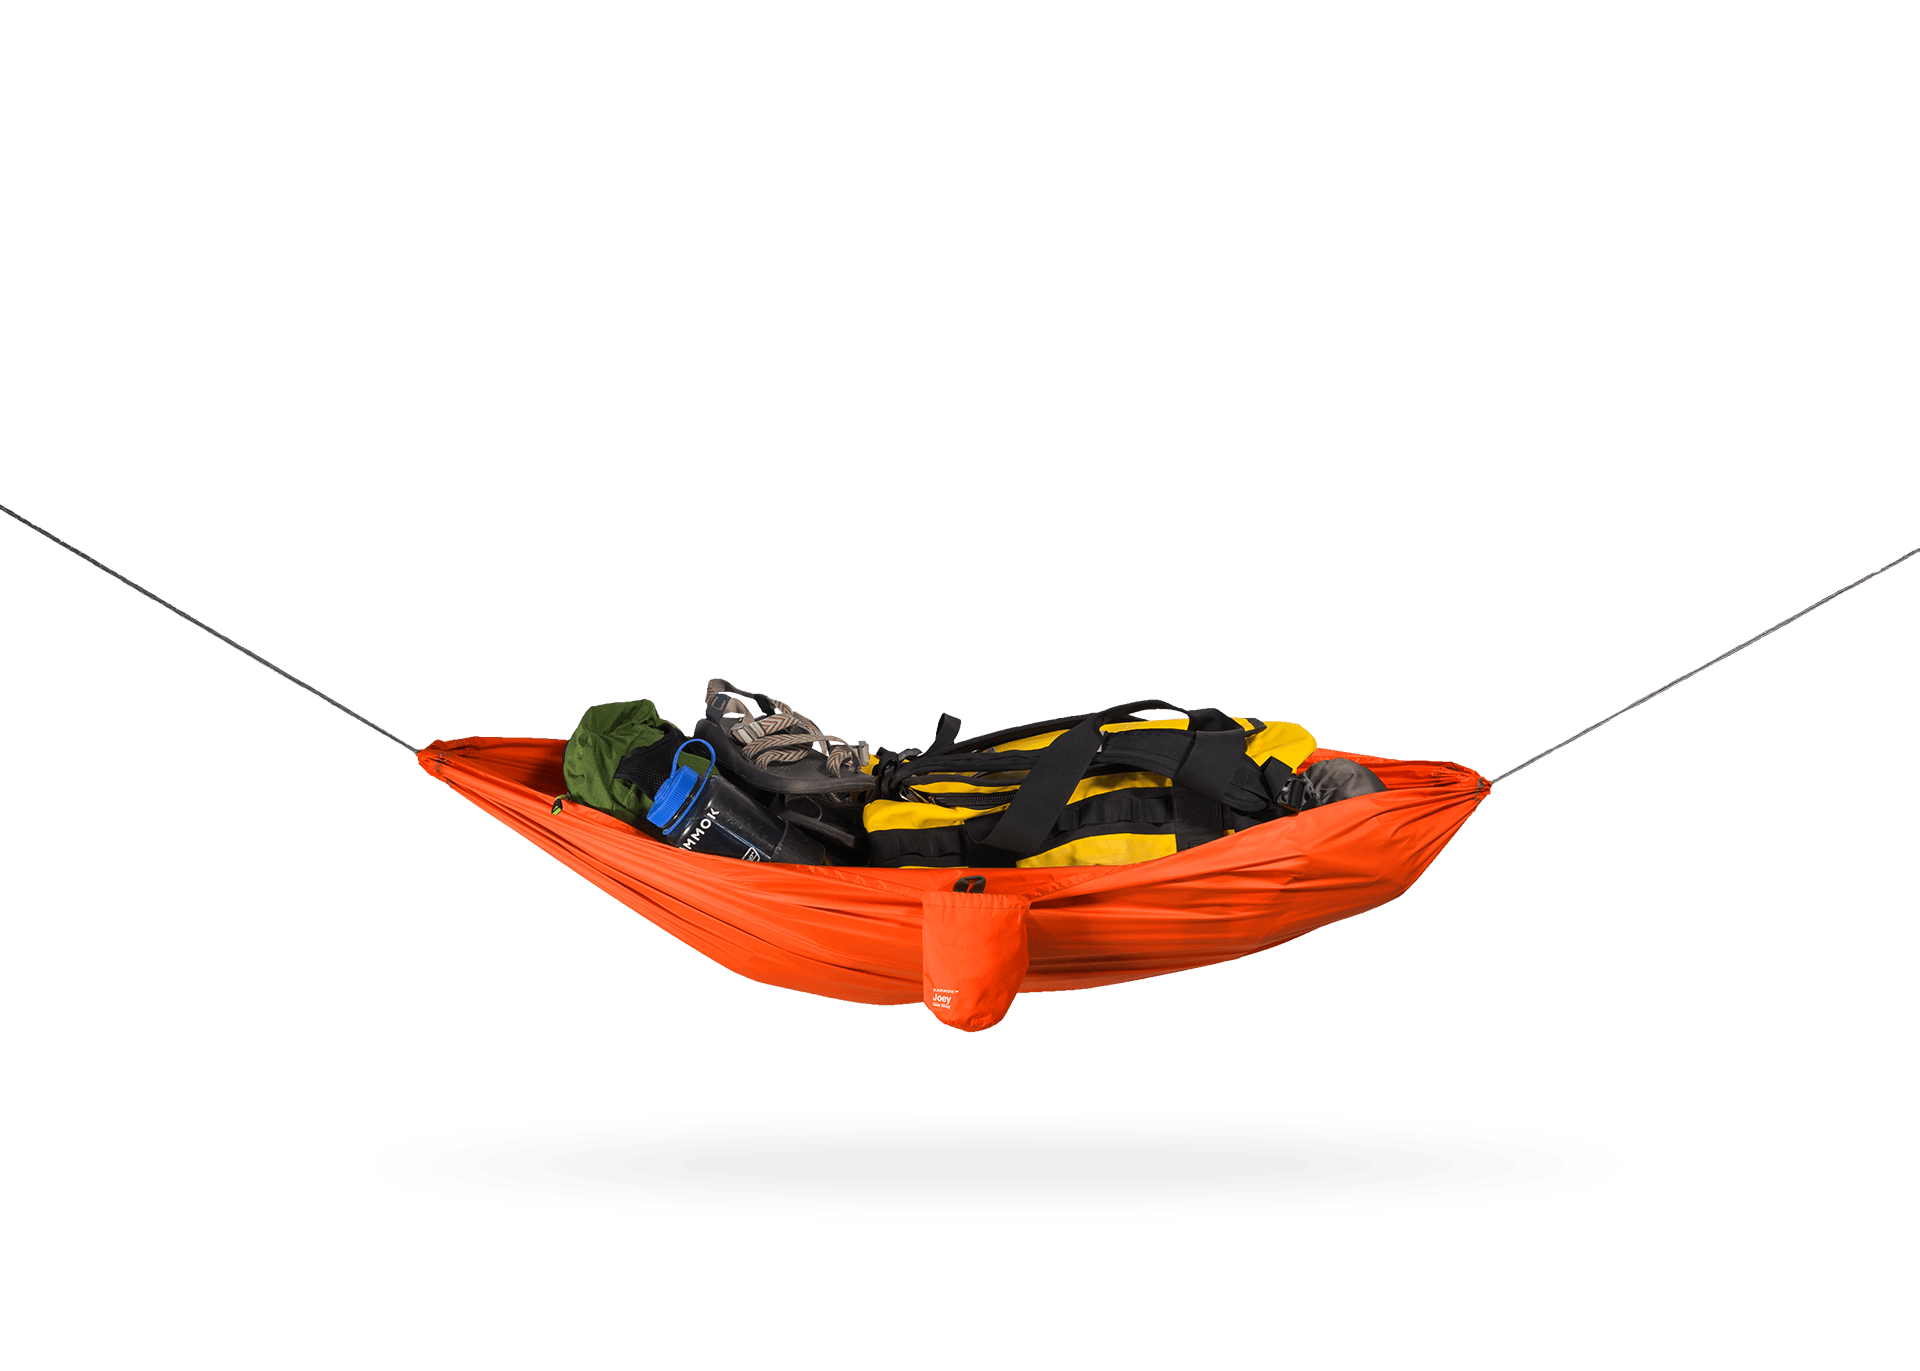 Weaver Registration Sticker Holder for Inflatable Boats